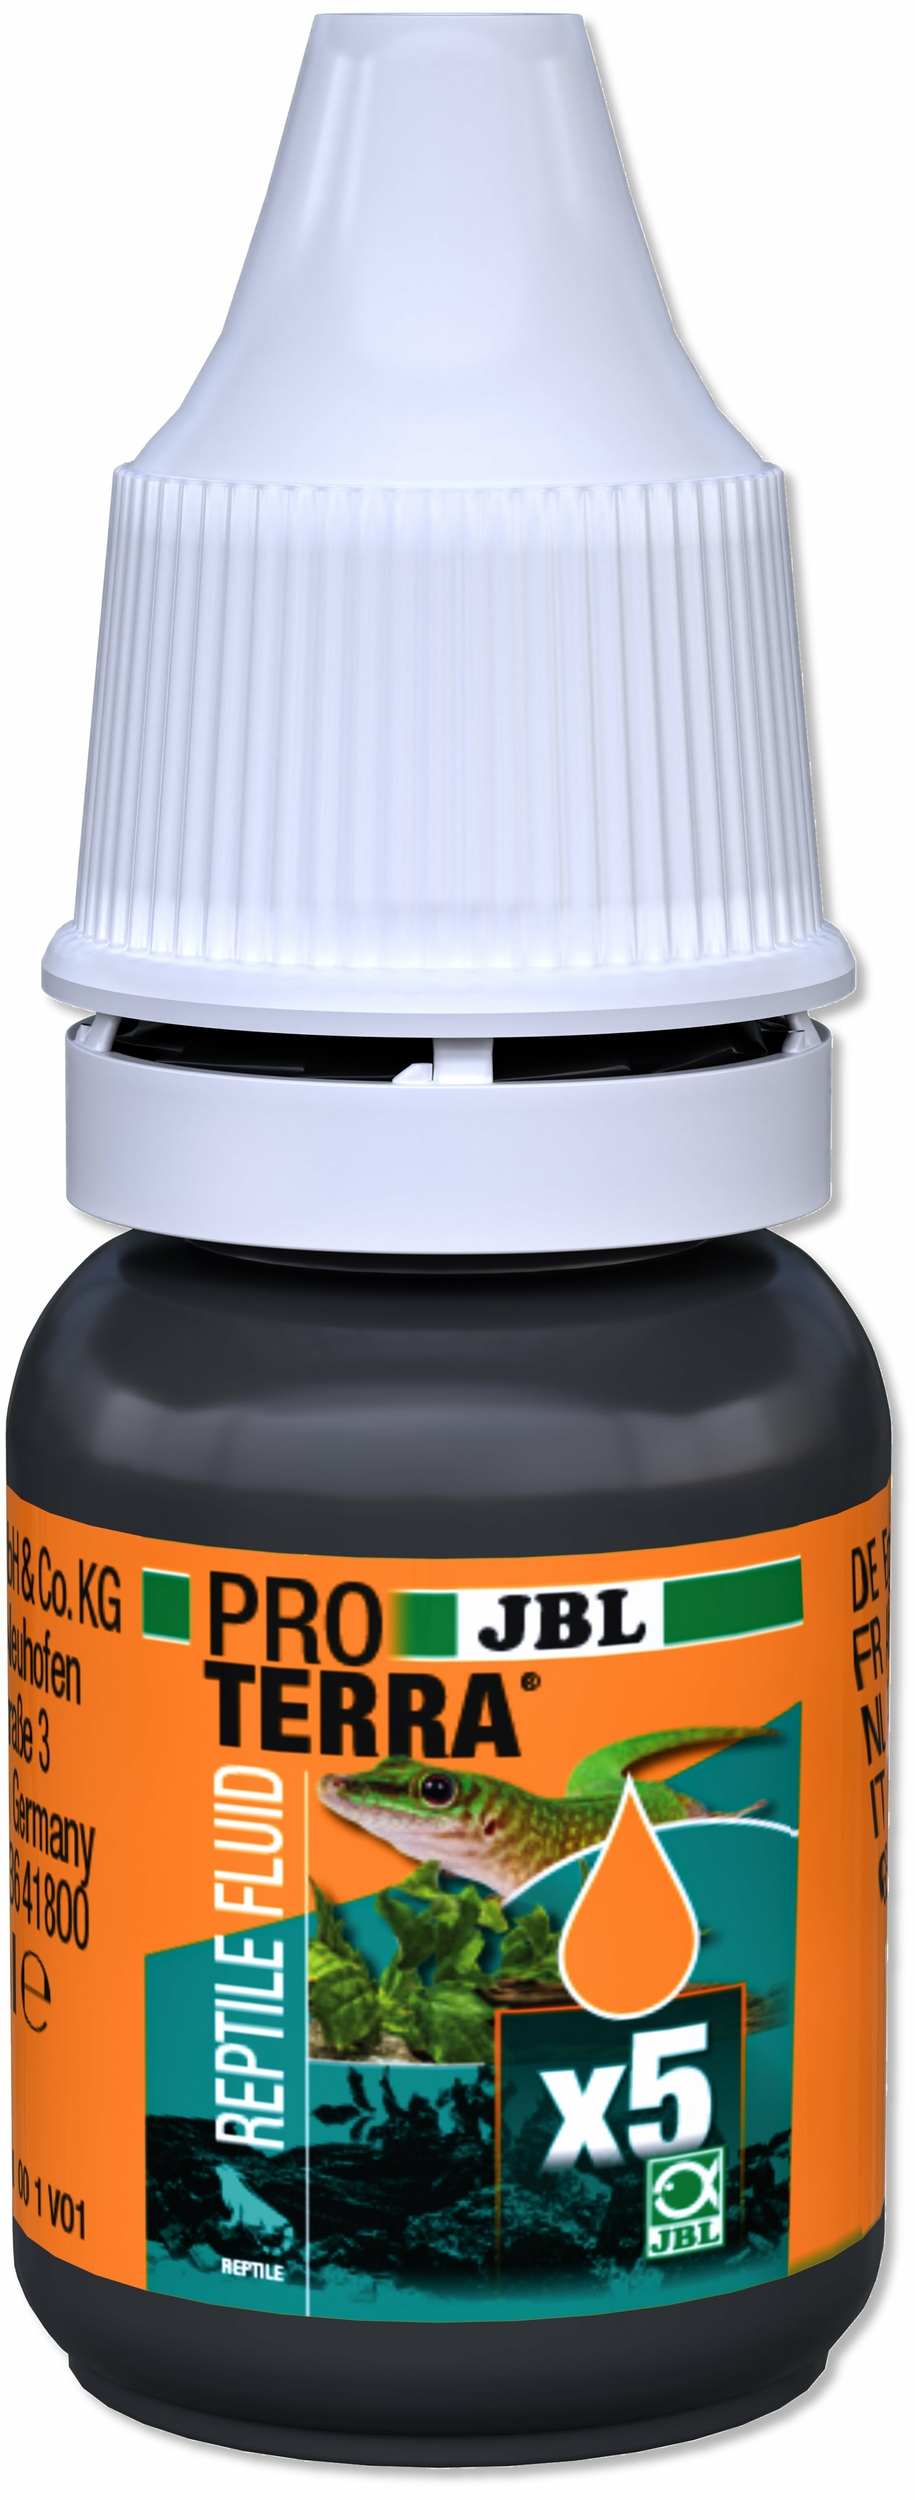 jbl-proterra-reptile-fluid-2-x-10-ml-complement-de-vitamines-et-oligoelements-pour-reptiles-et-autres-animaux-de-terrarium-1-min